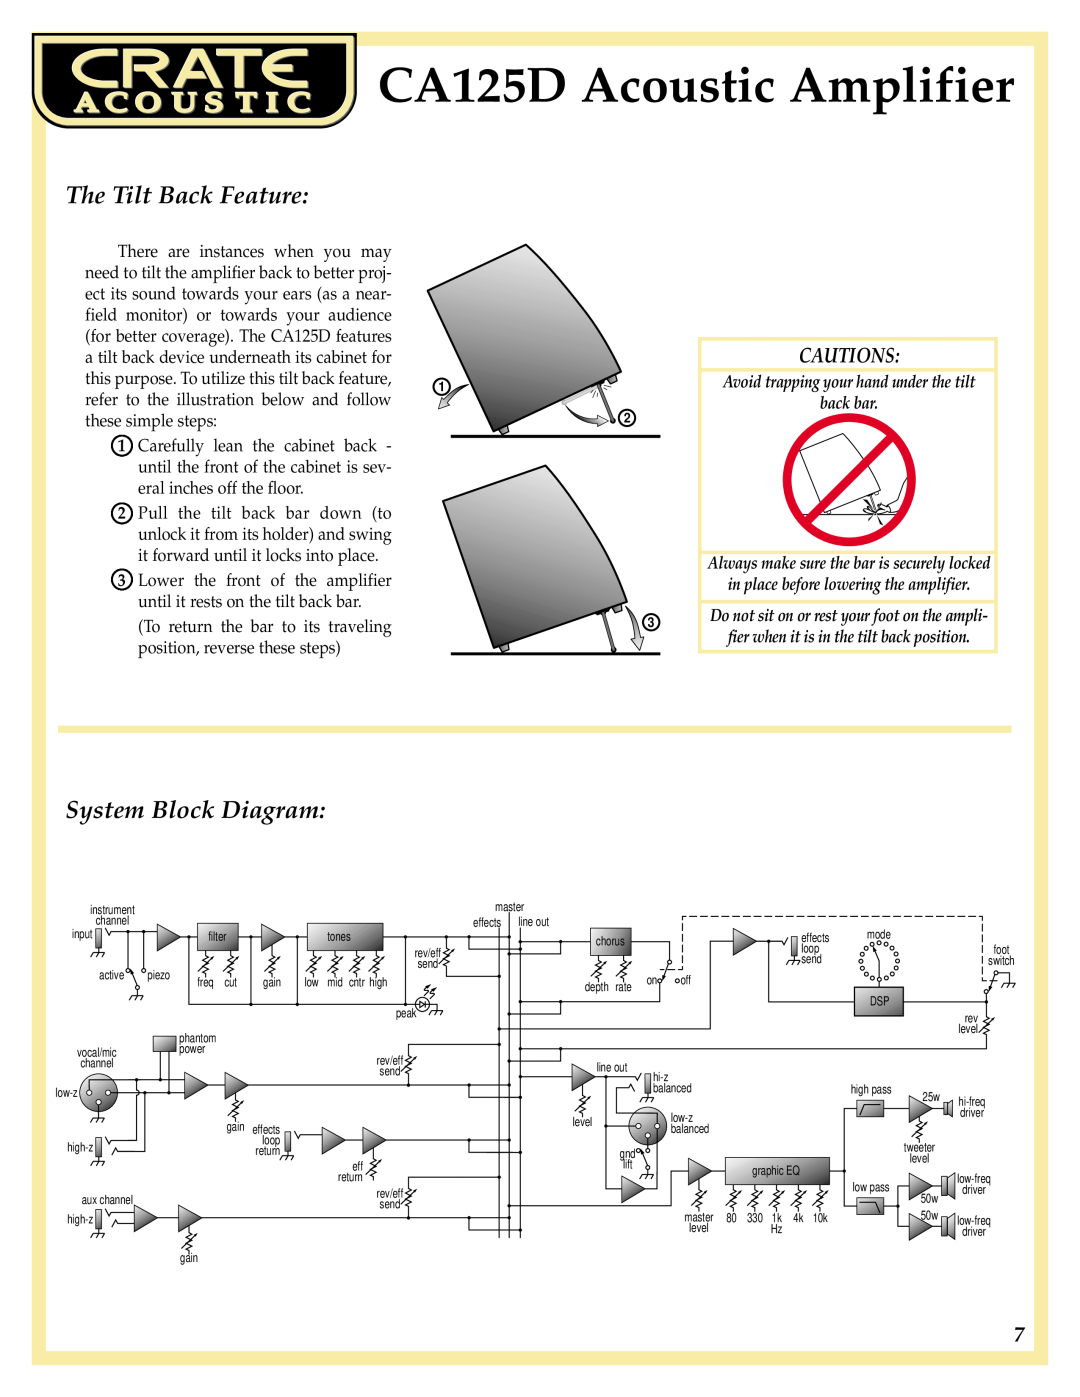 Crate Amplifiers manual The Tilt Back Feature, System Block Diagram, Cautions, CA125D Acoustic Amplifier 